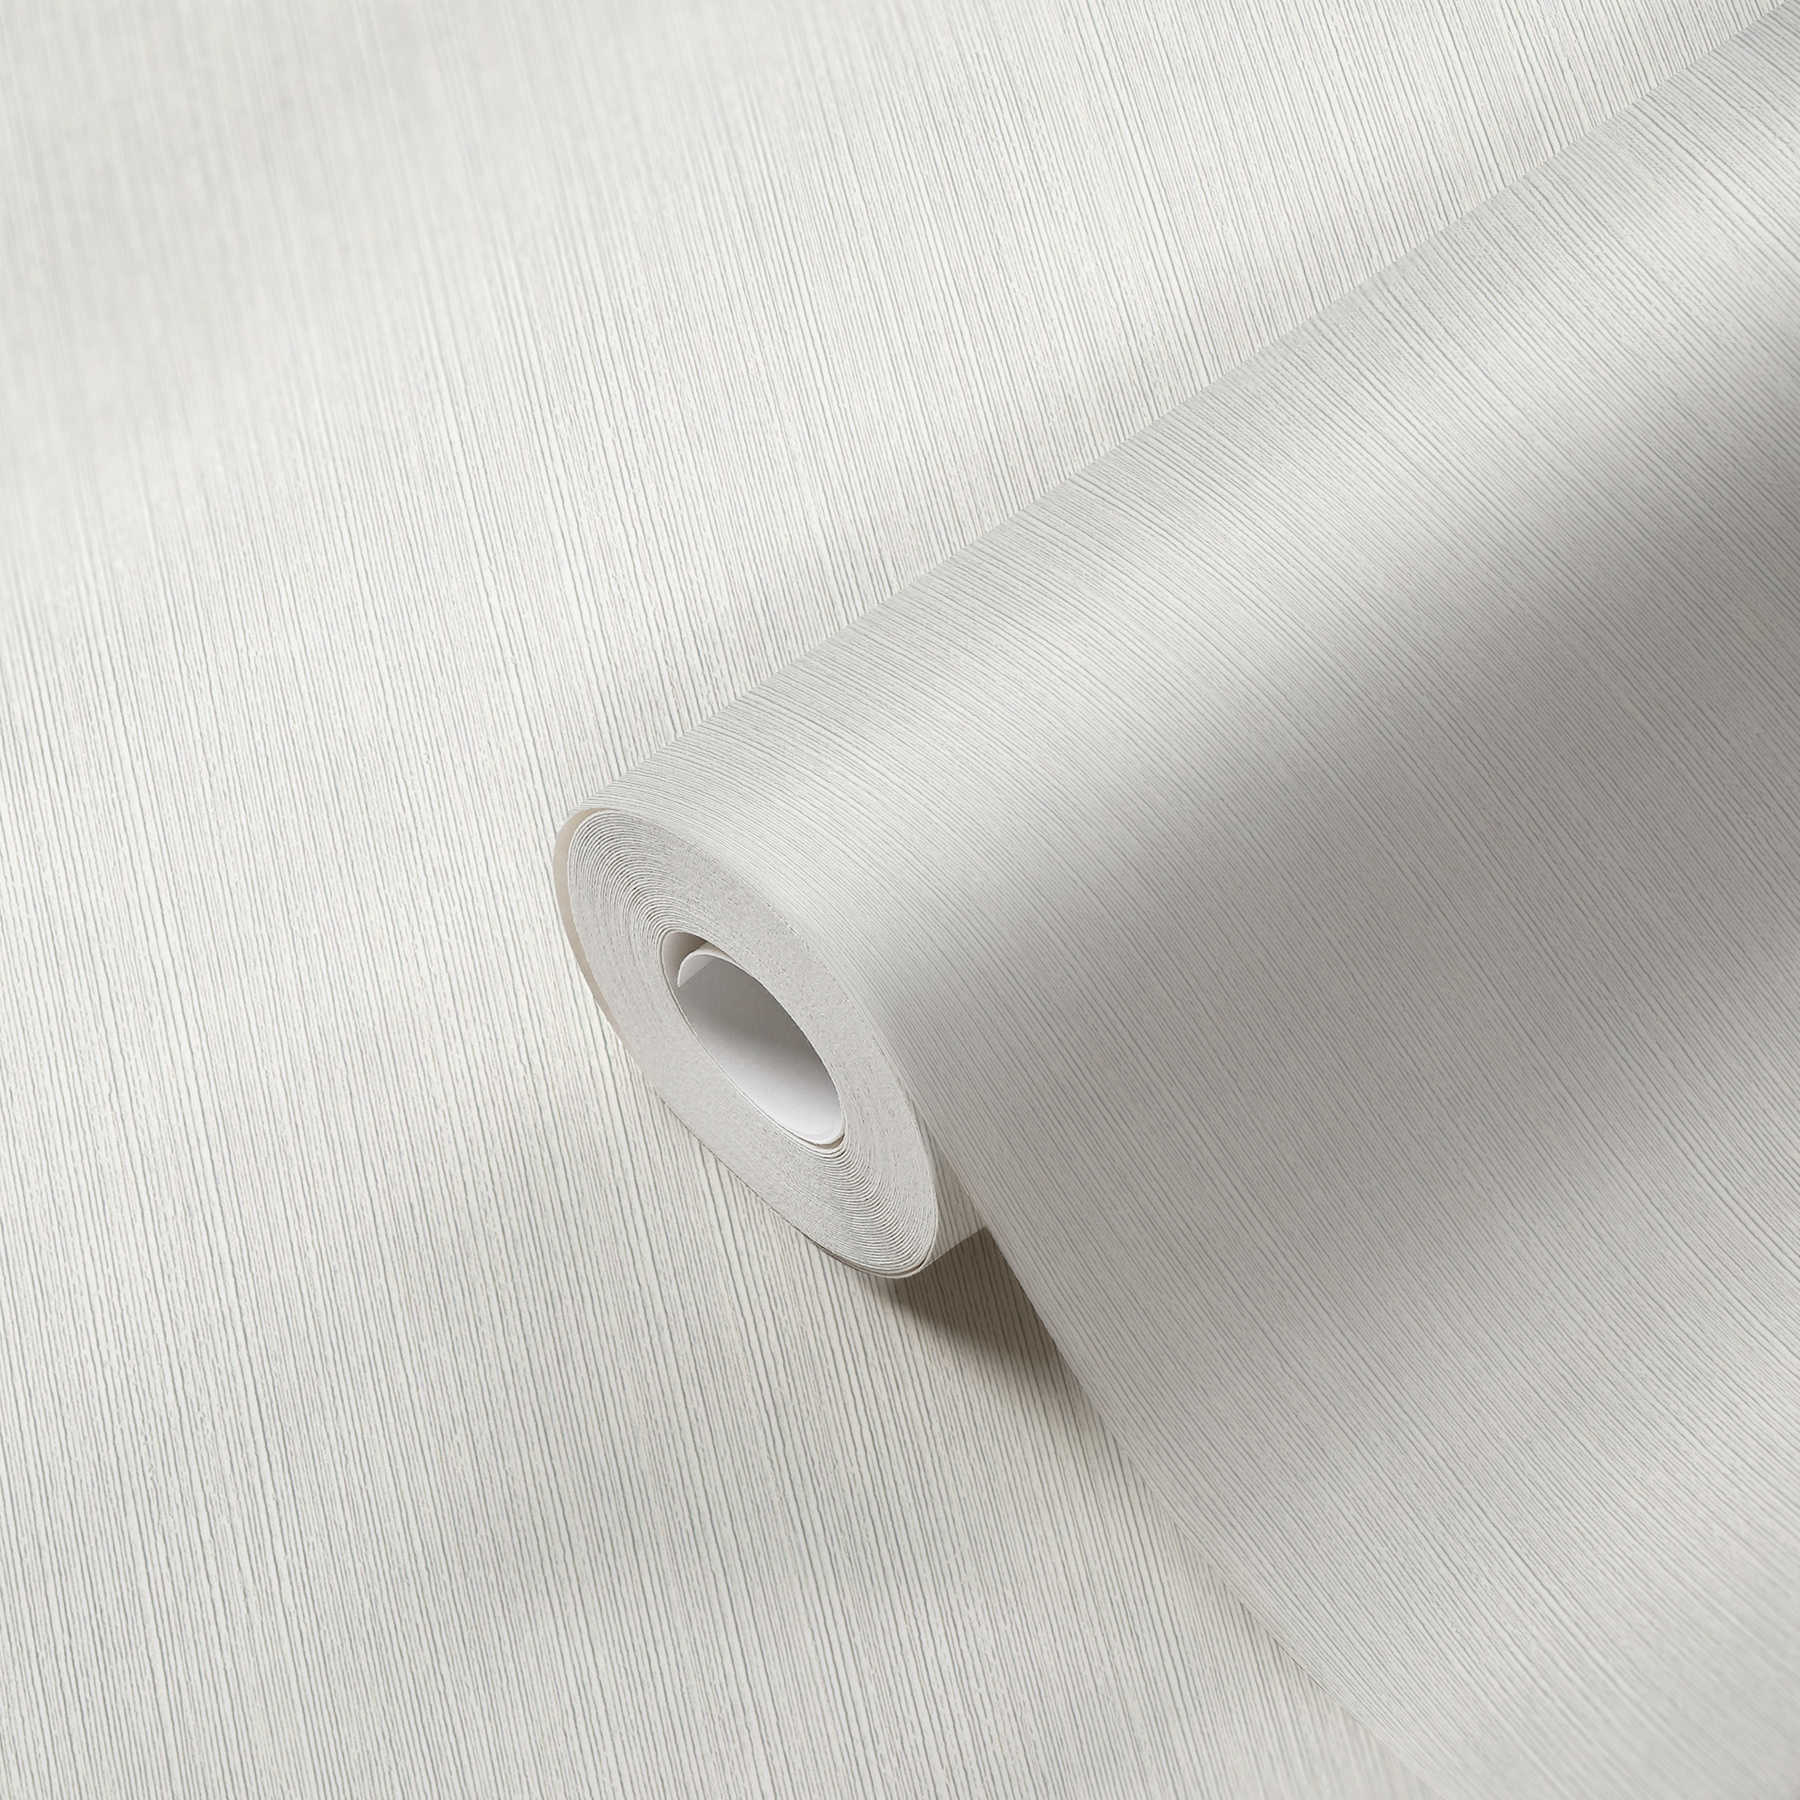             Verfbaar vliesbehang met textuuroppervlak - wit
        